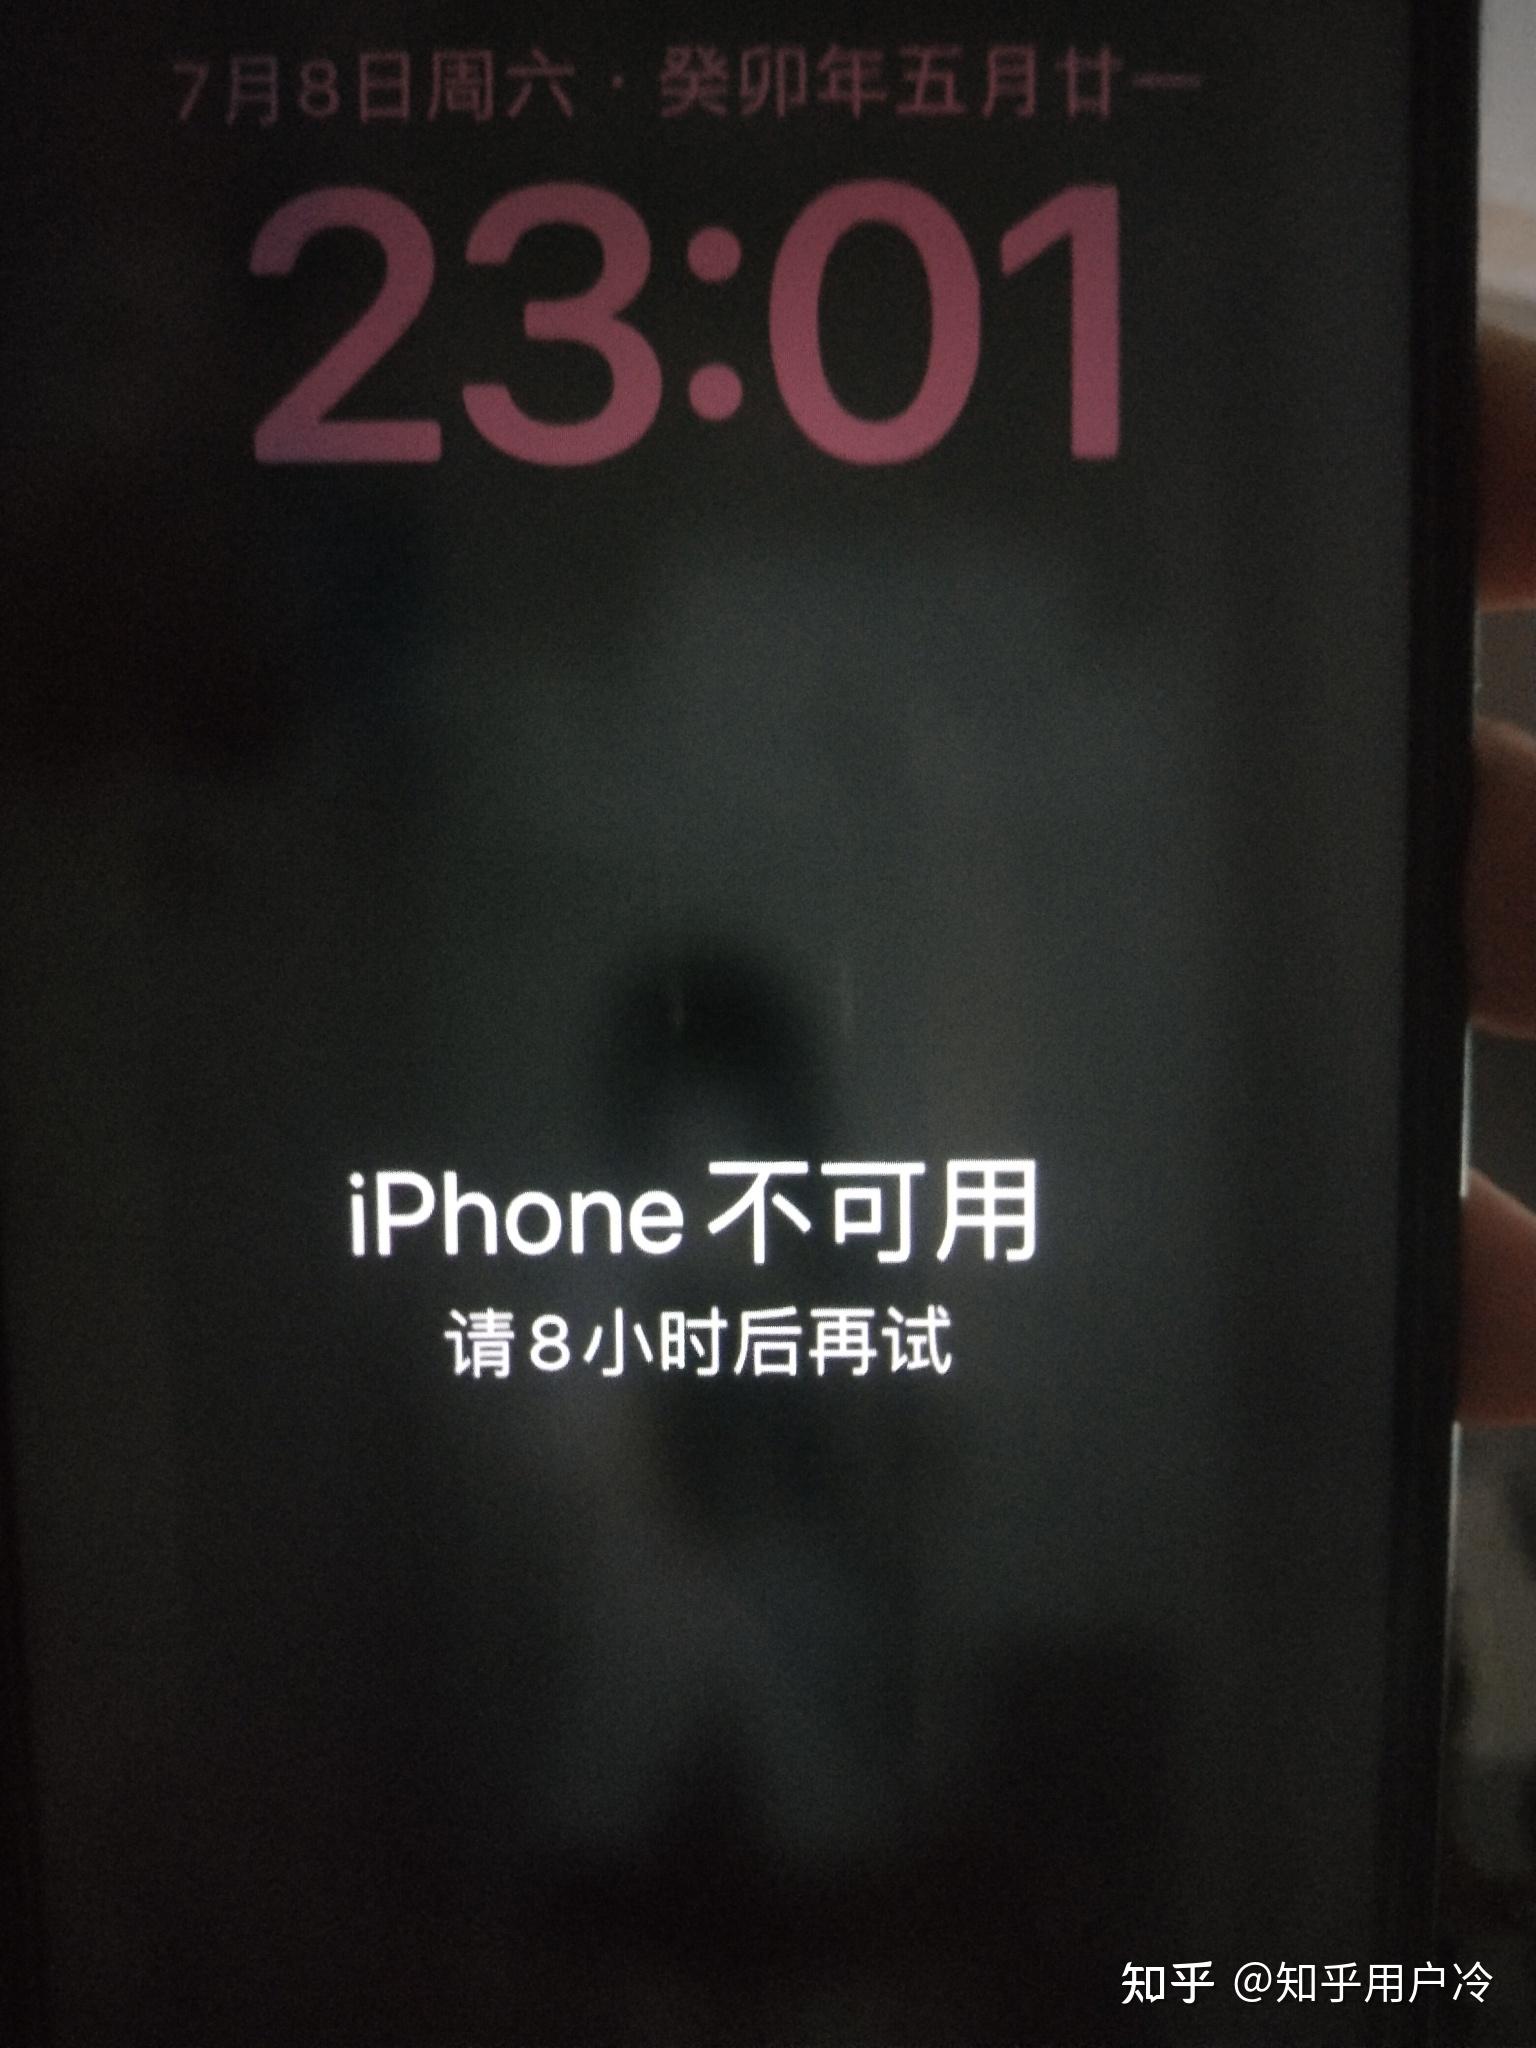 手机不可用 - Apple 社区